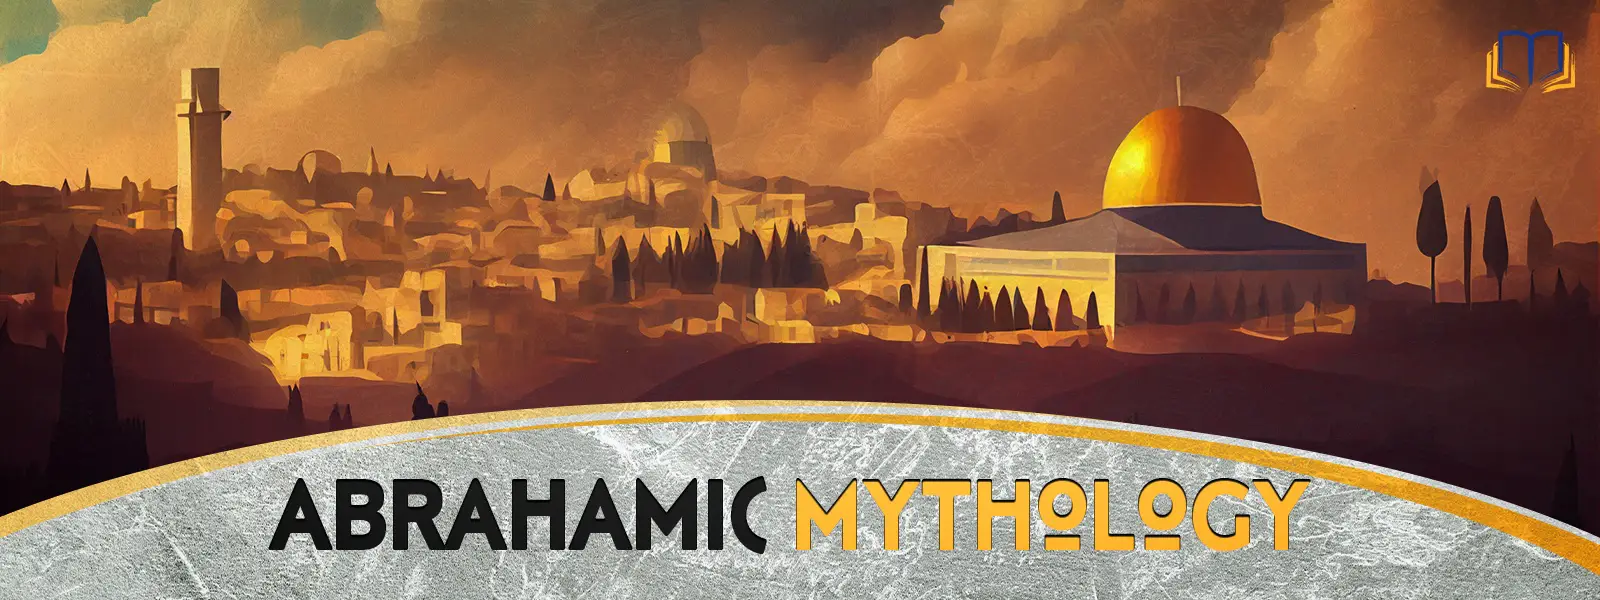 Abrahamic Mythology Hub Landscape